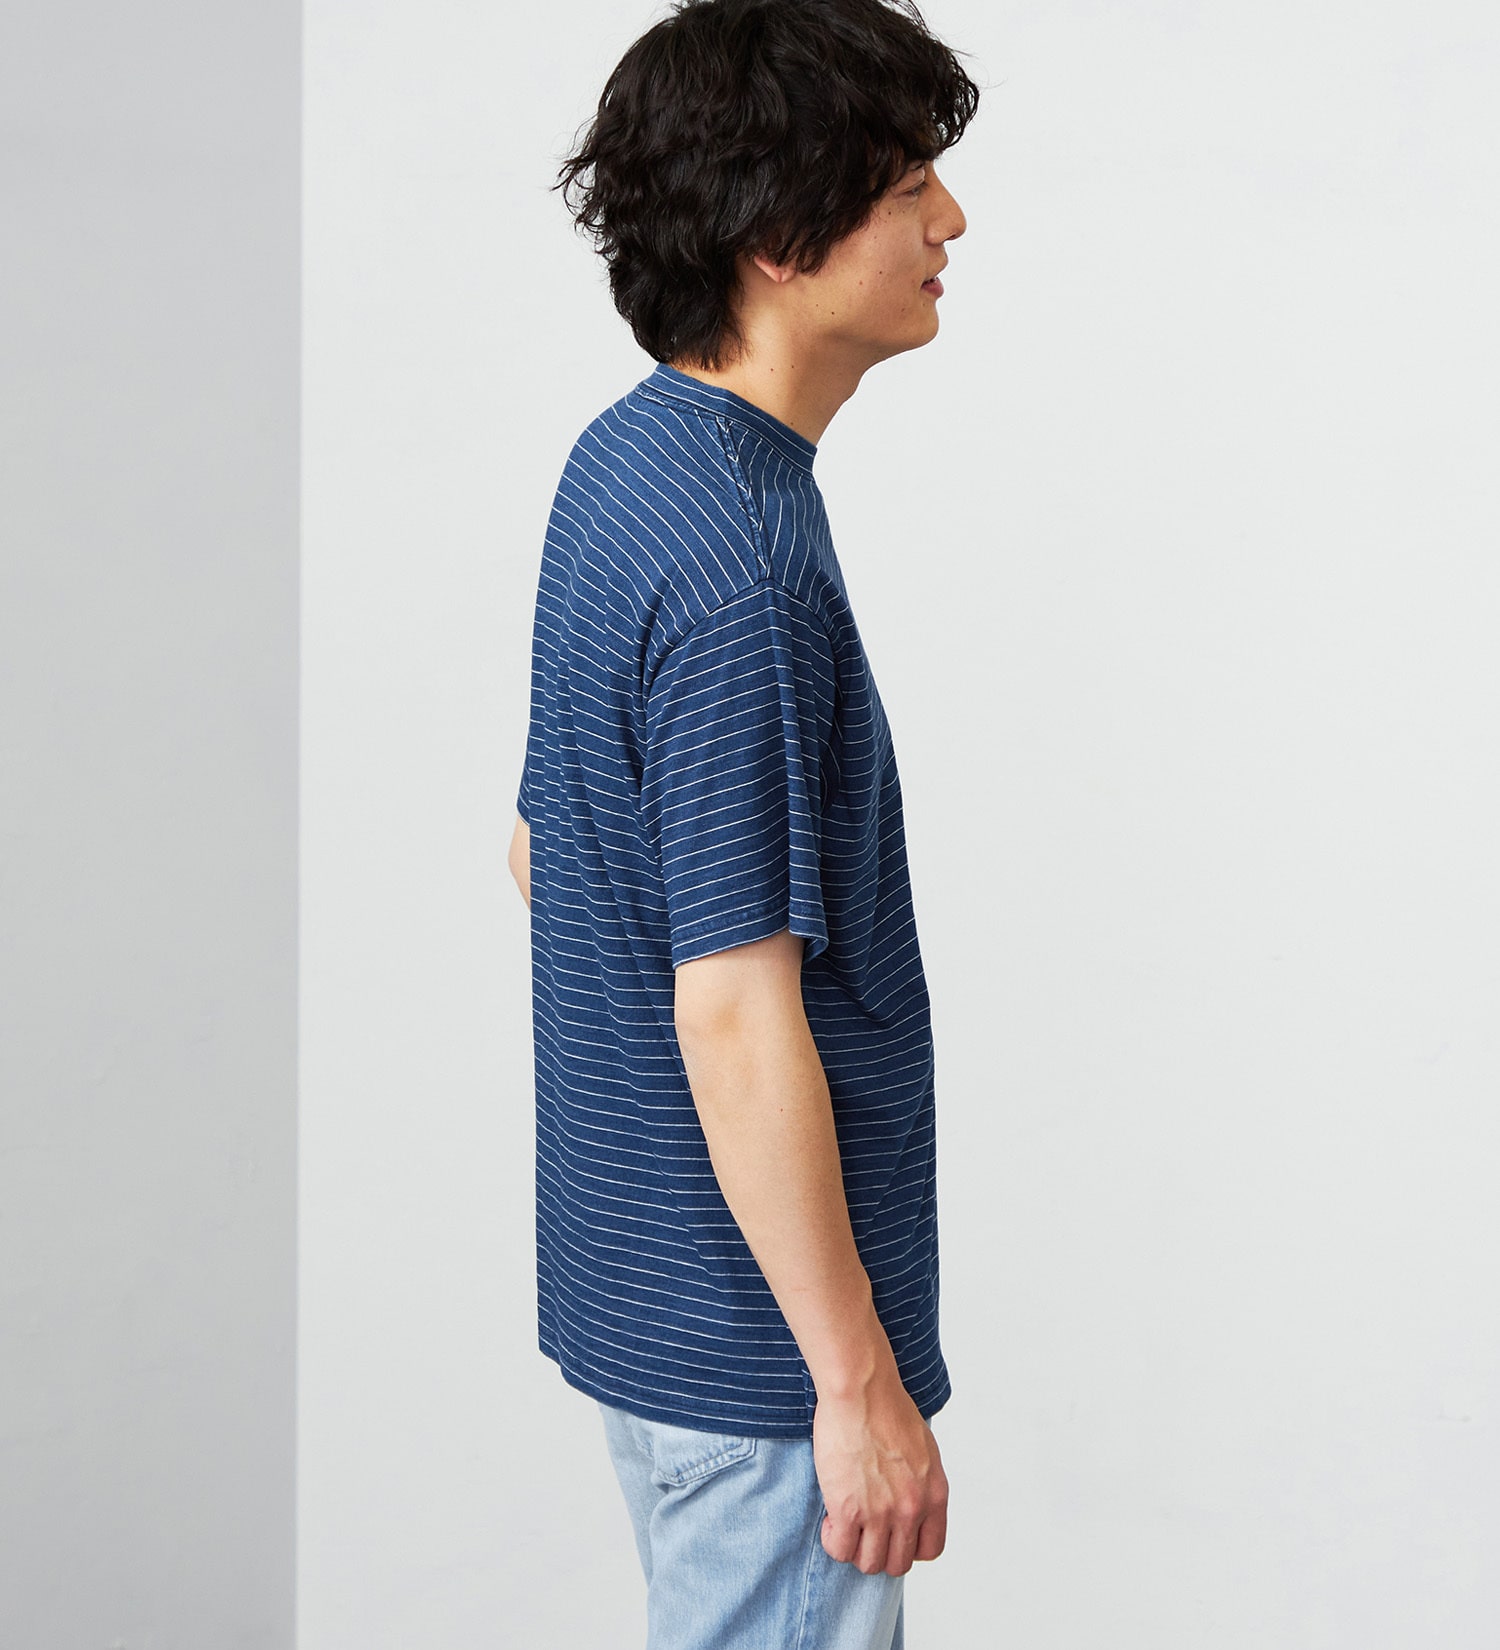 EDWIN(エドウイン)のインディゴボーダー半袖Tシャツ|トップス/Tシャツ/カットソー/メンズ|濃色ブルー